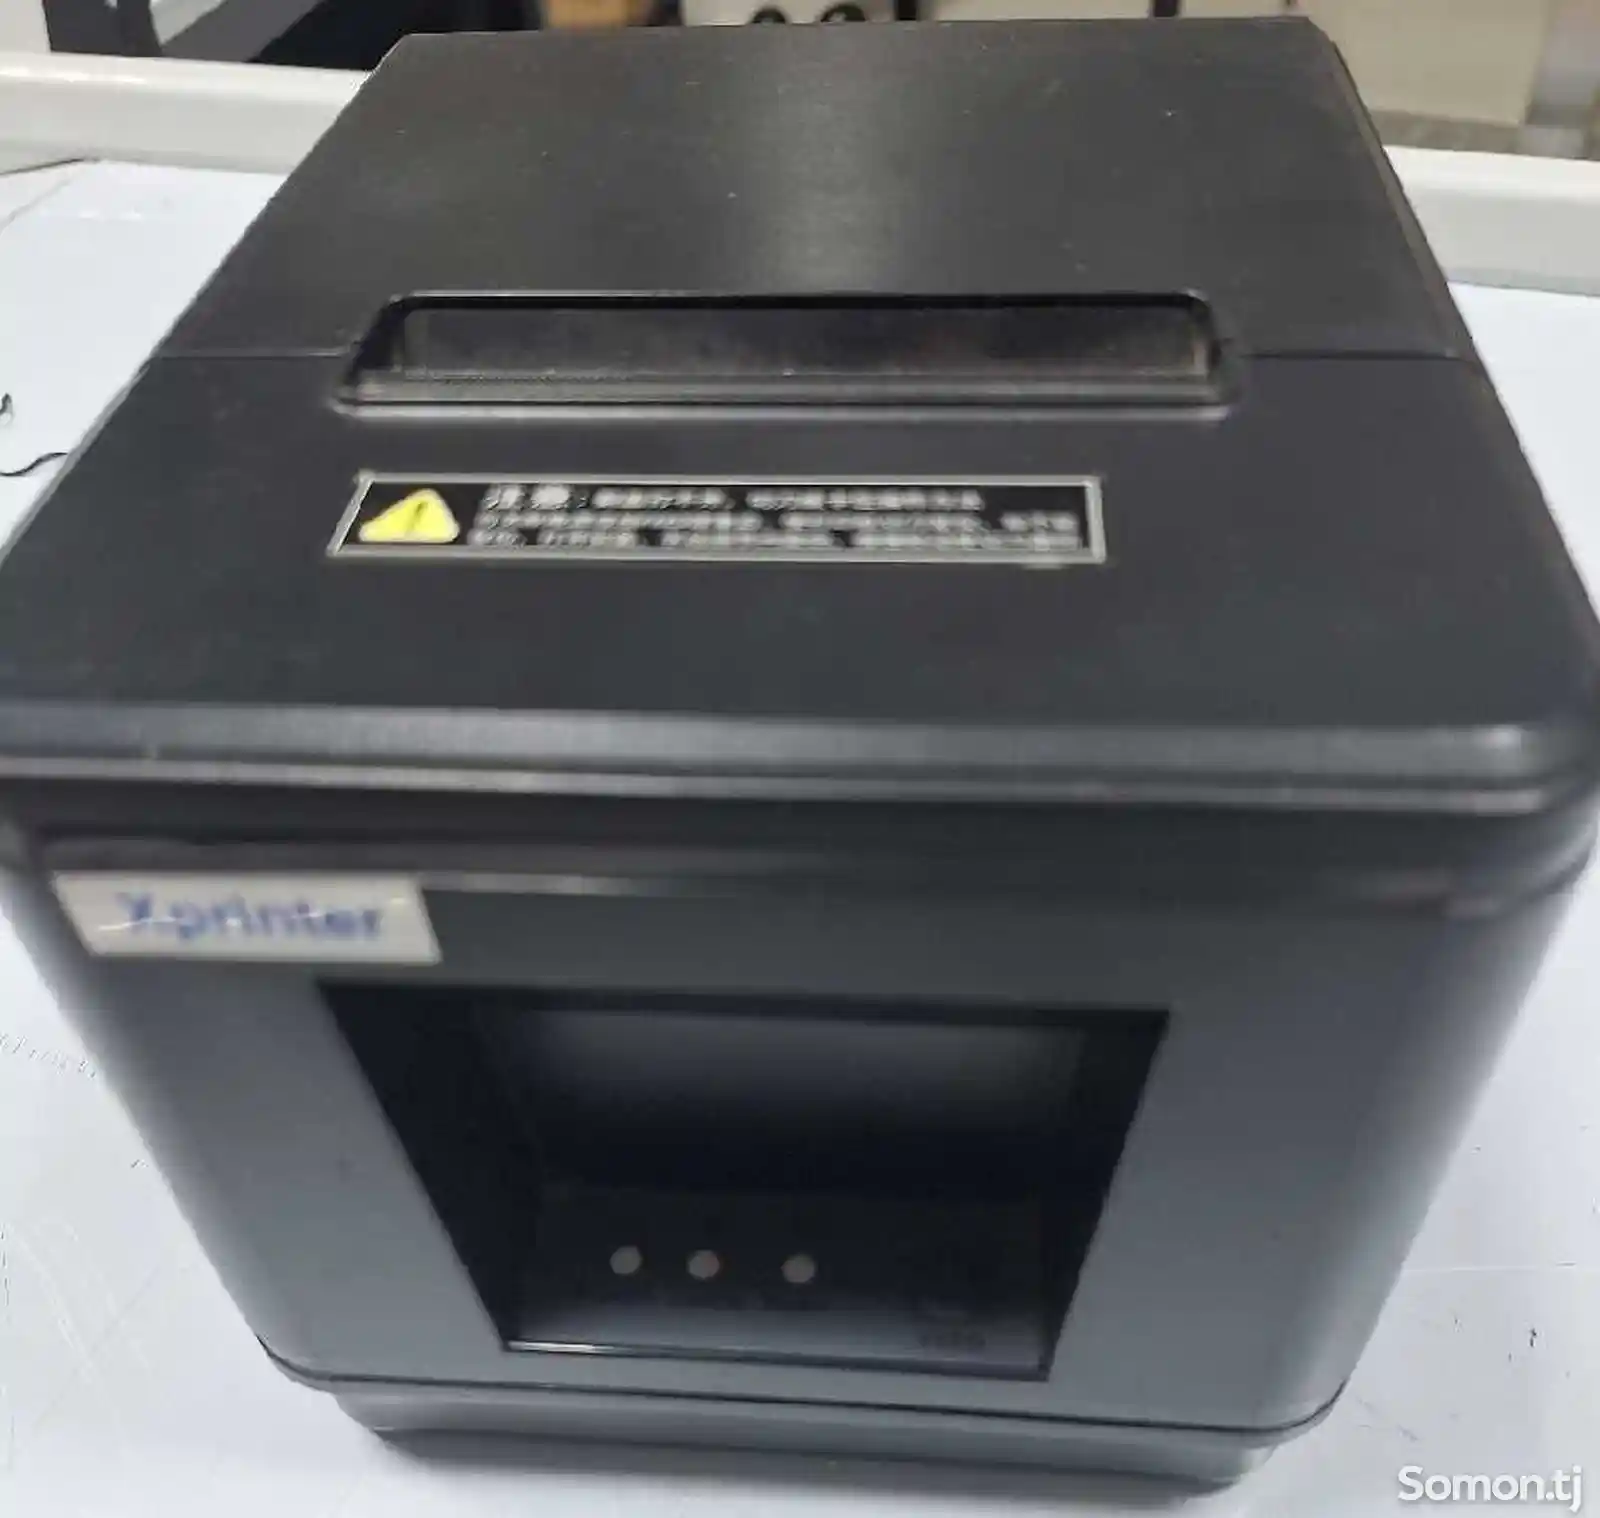 Принтер ценник Xprinter-1